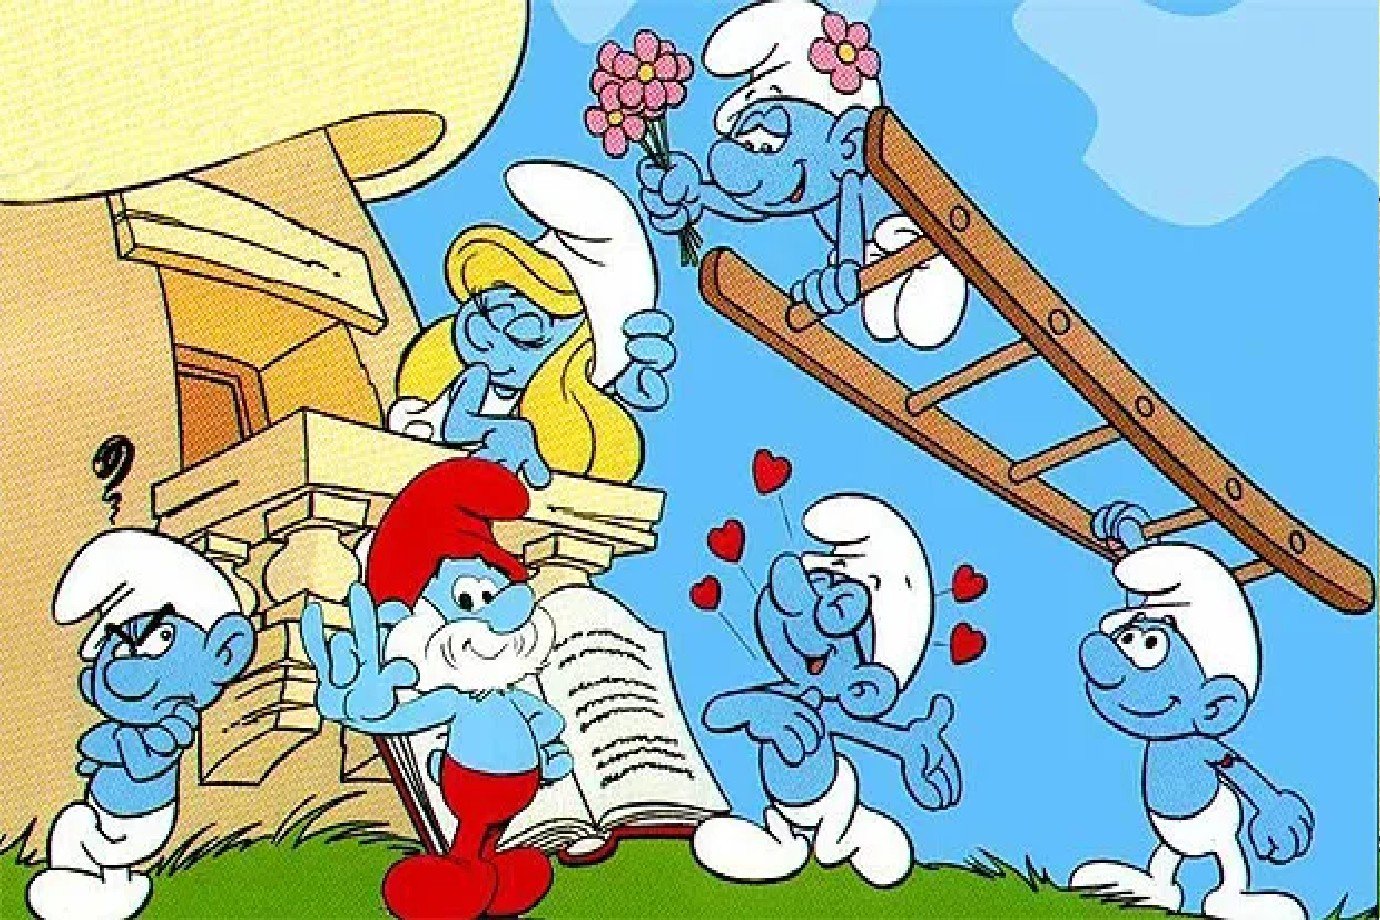 Smurfs (1981 - 1990):

Os "Smurfs" são pequenas criaturas azuis que vivem em uma vila escondida na floresta, liderados pelo sábio Papai Smurf. Eles enfrentam o malvado Gargamel e seu gato Cruel, que constantemente tentam capturá-los. A série encantou crianças com suas histórias leves e personagens adoráveis.